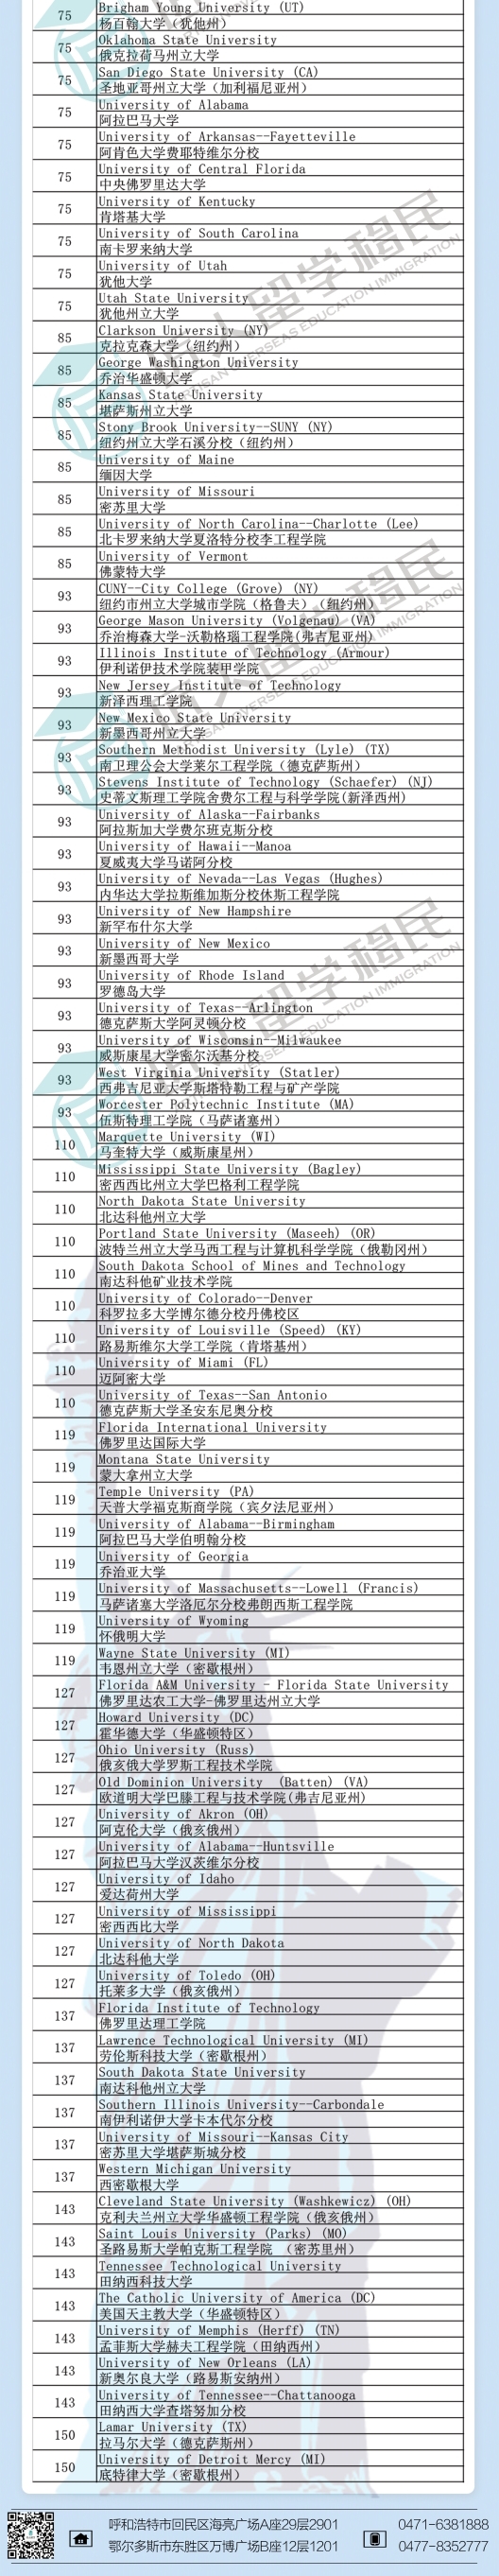 黑龙江2021年度U.S.News土木工程排名